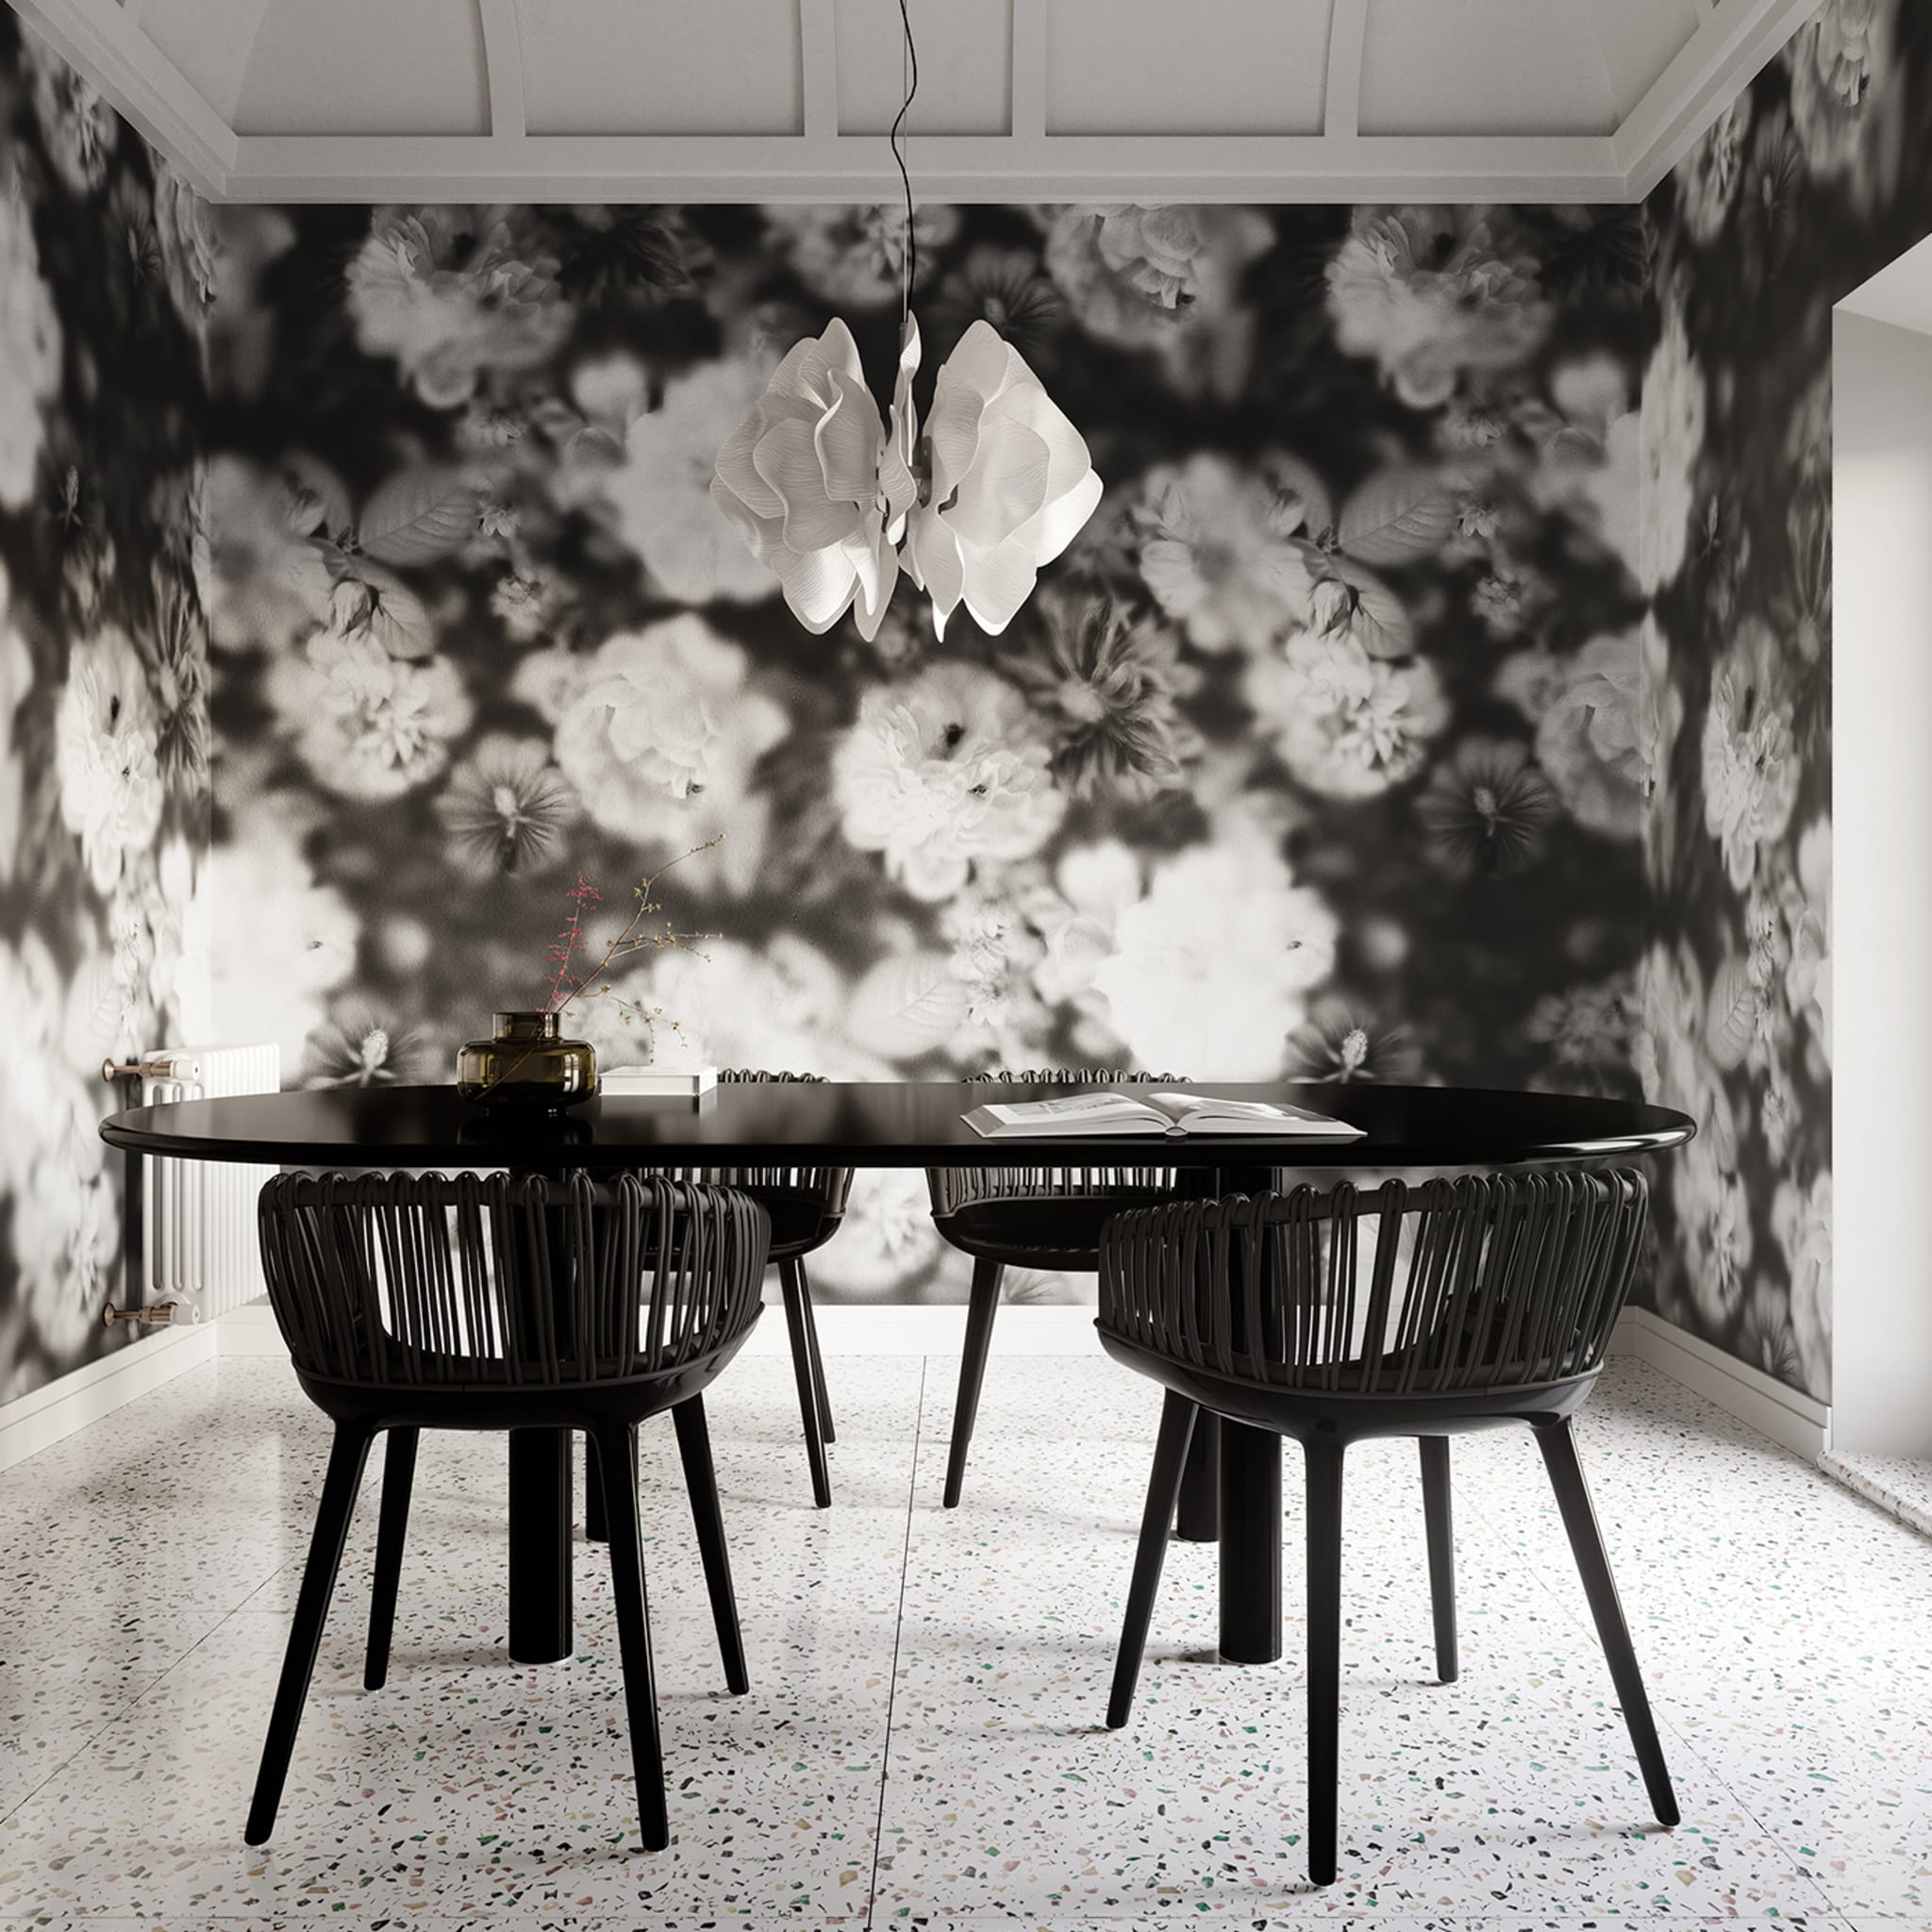 Blossom Black & White Wallpaper  - Alternative view 2